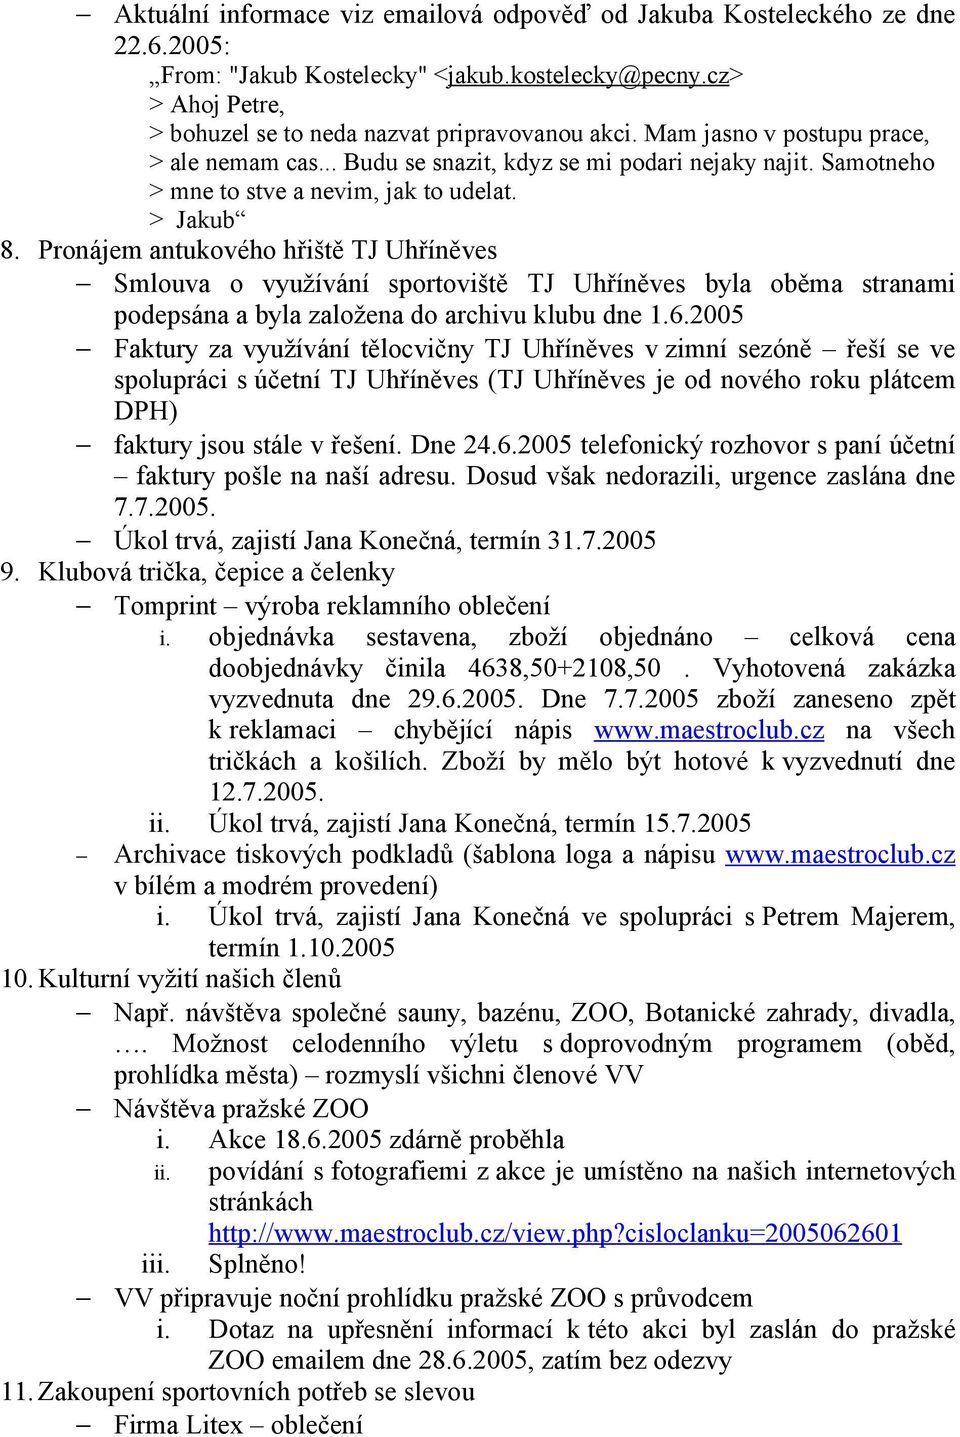 Pronájem antukového hřiště TJ Uhříněves Smlouva o využívání sportoviště TJ Uhříněves byla oběma stranami podepsána a byla založena do archivu klubu dne 1.6.